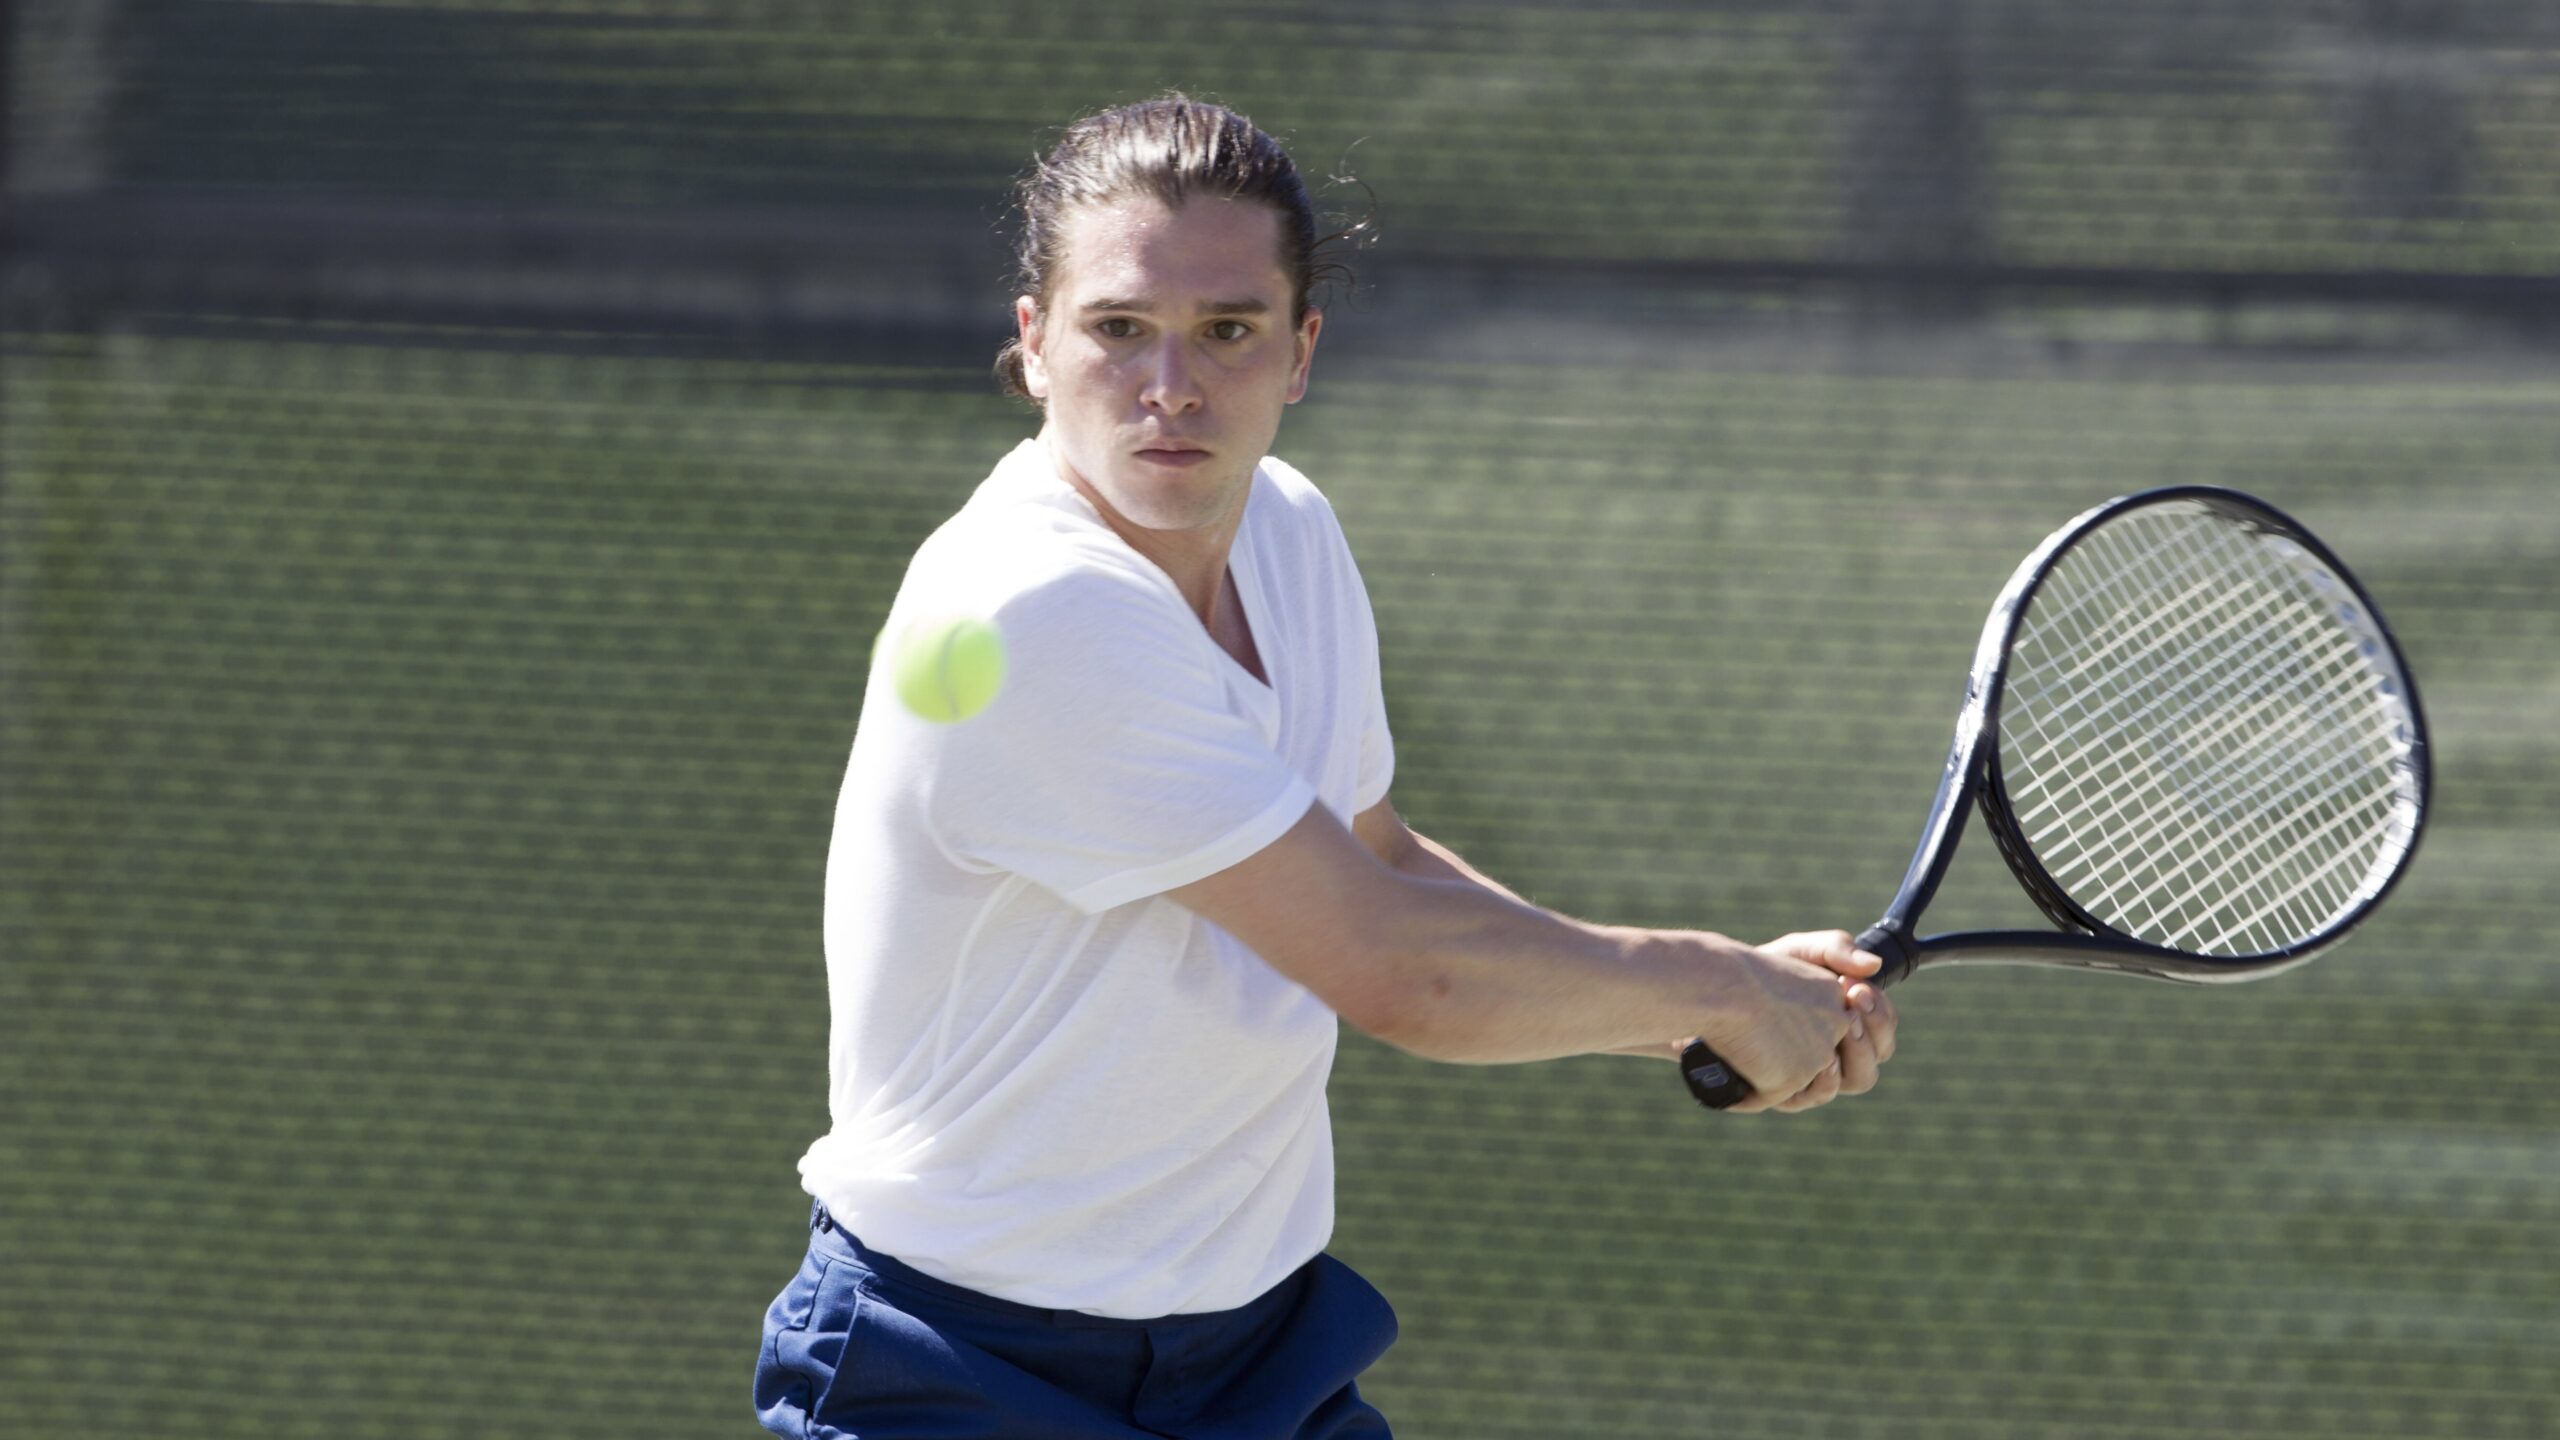 A tennis player in a white shirt hits a ball.